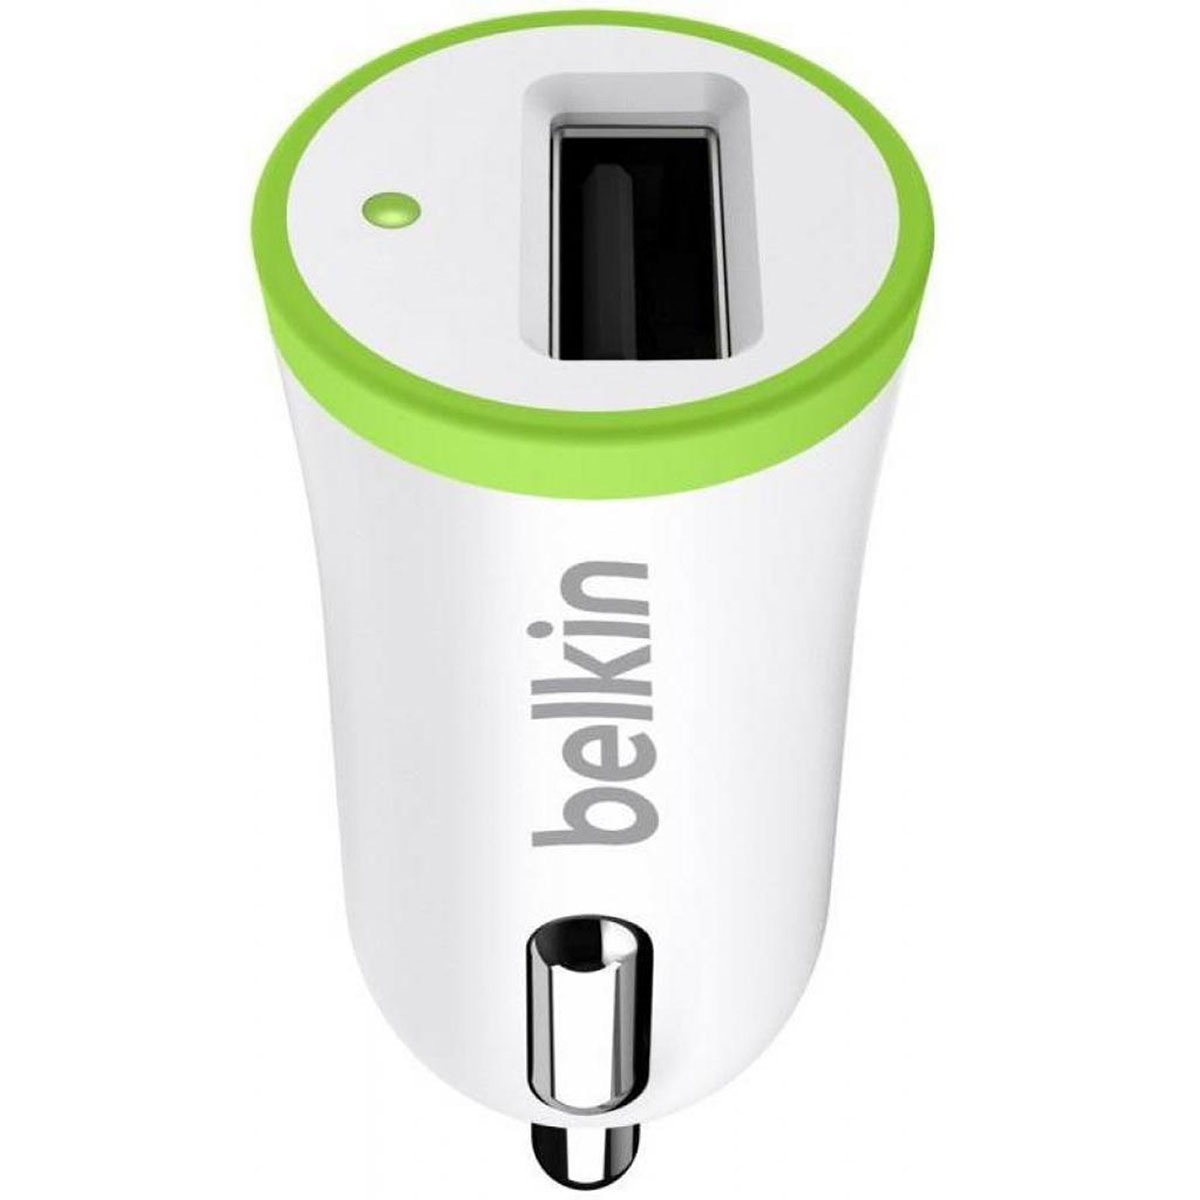 АЗУ (автомобильное зарядное устройство) Belkin F8J051, ток 2.1A, с USB выходом, цвет белый.